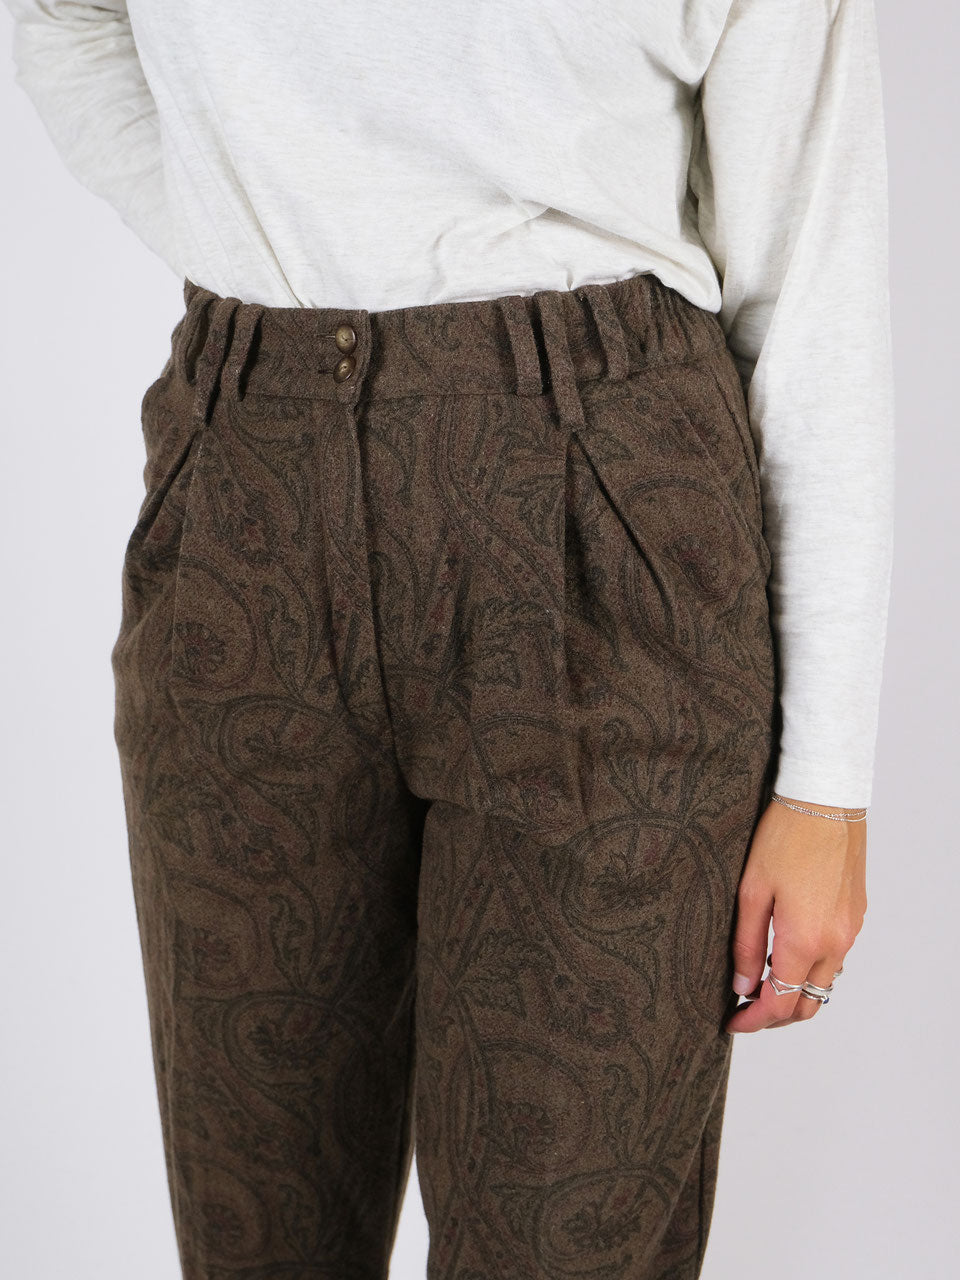 Wool trousers paisley pattern